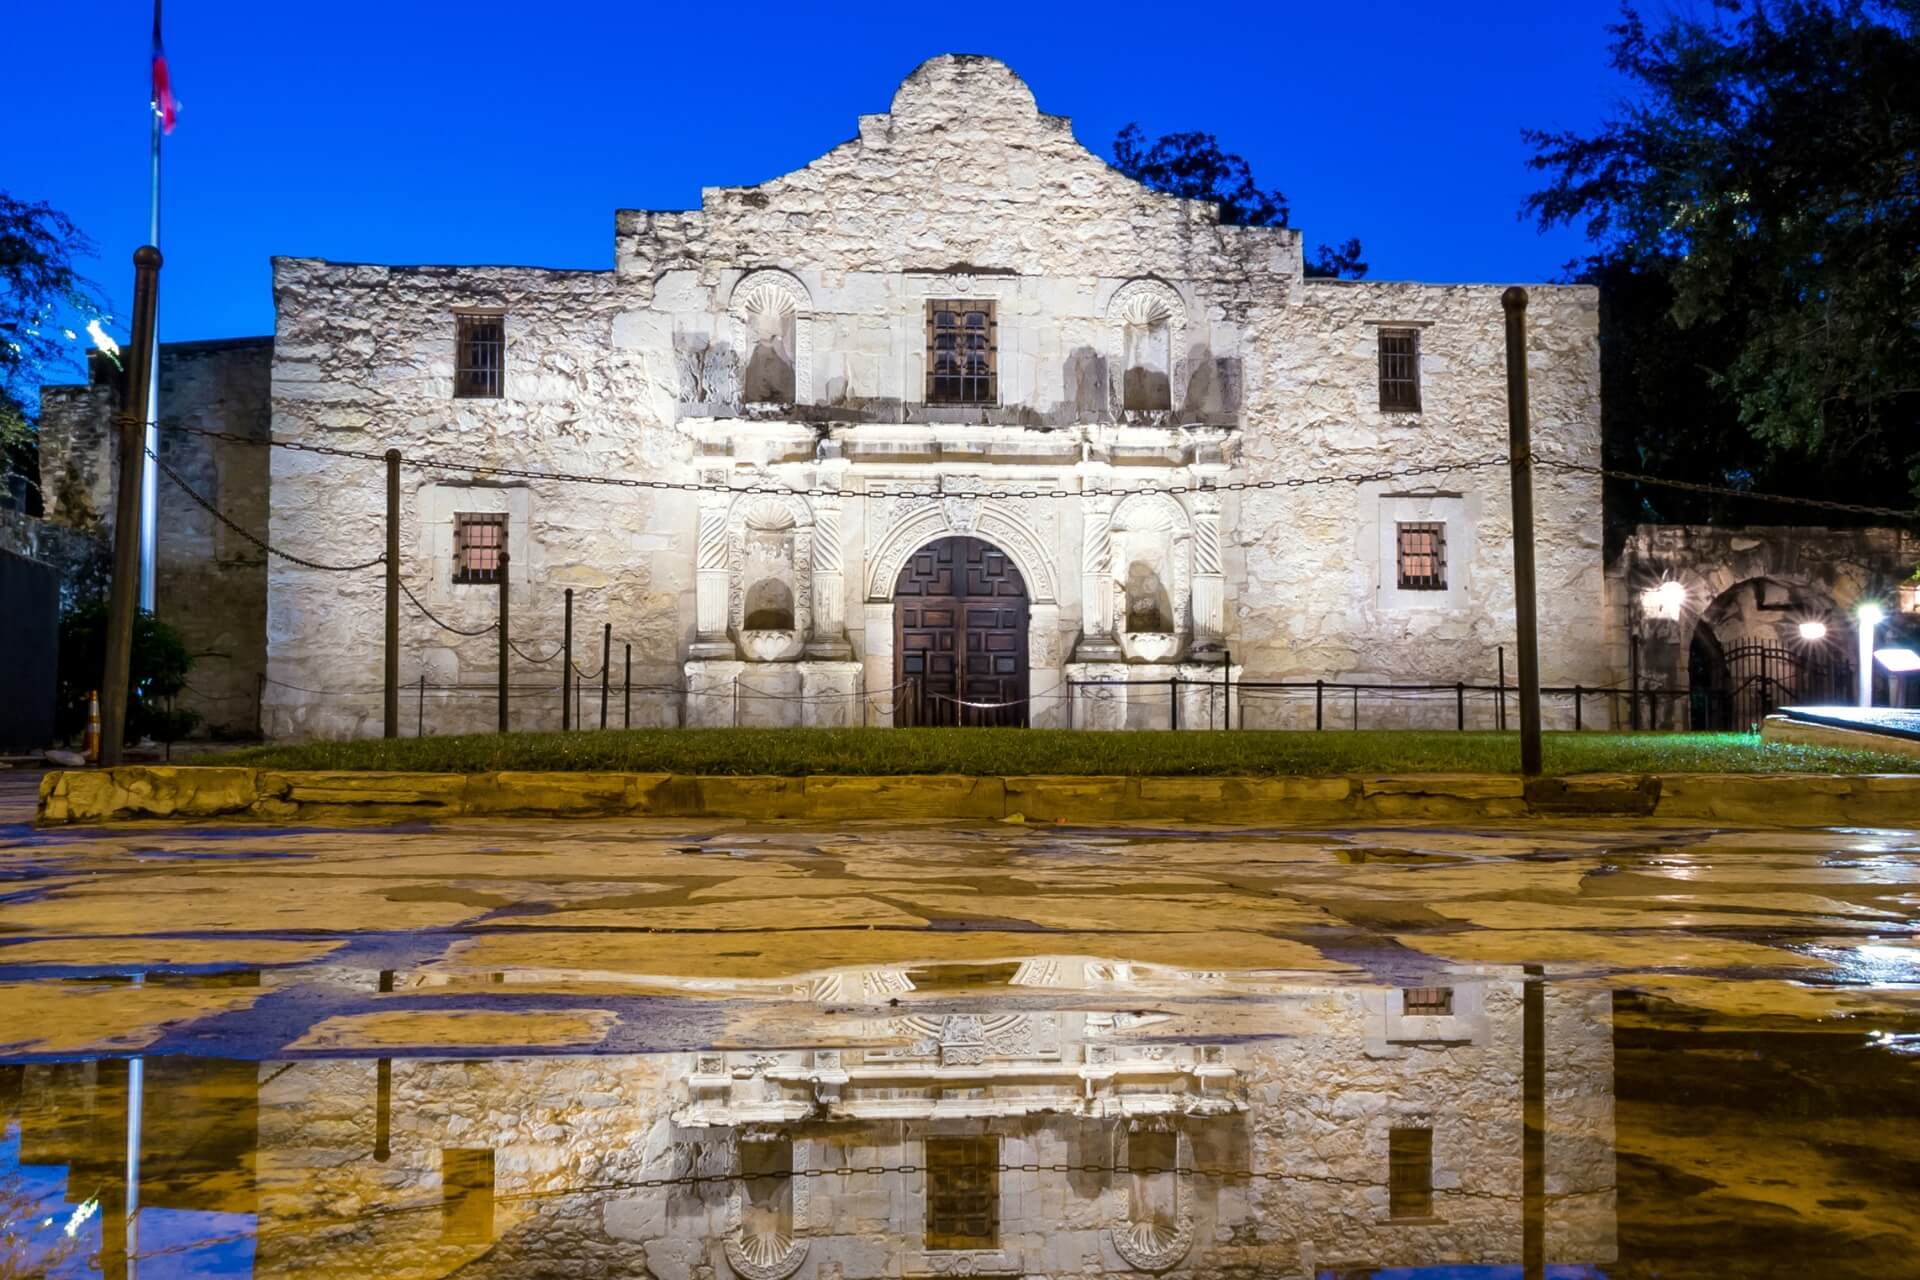 San Antonio, Texas - alamo battle